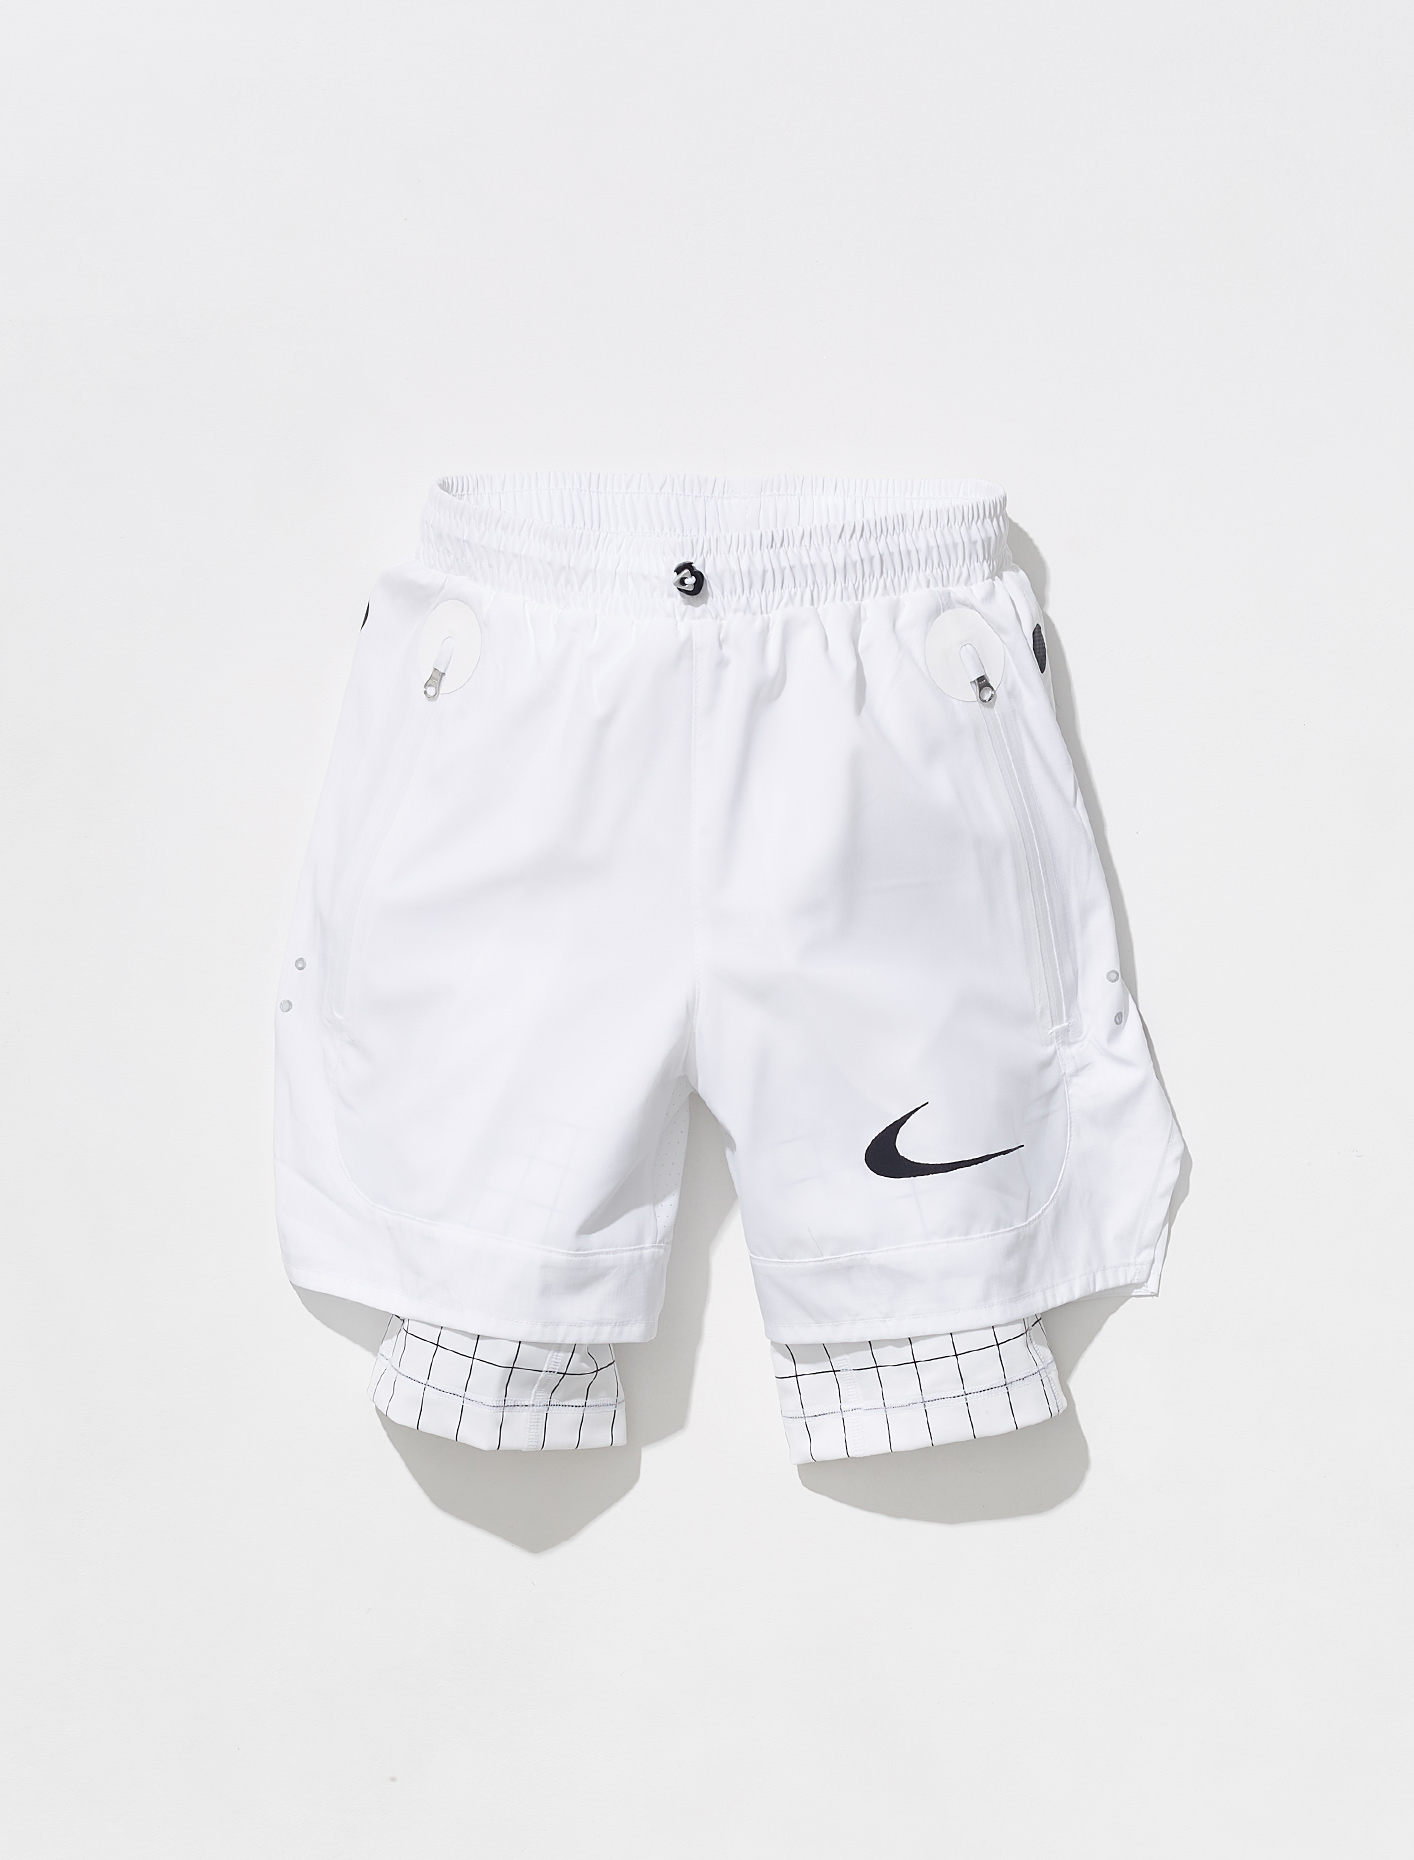 white running shorts